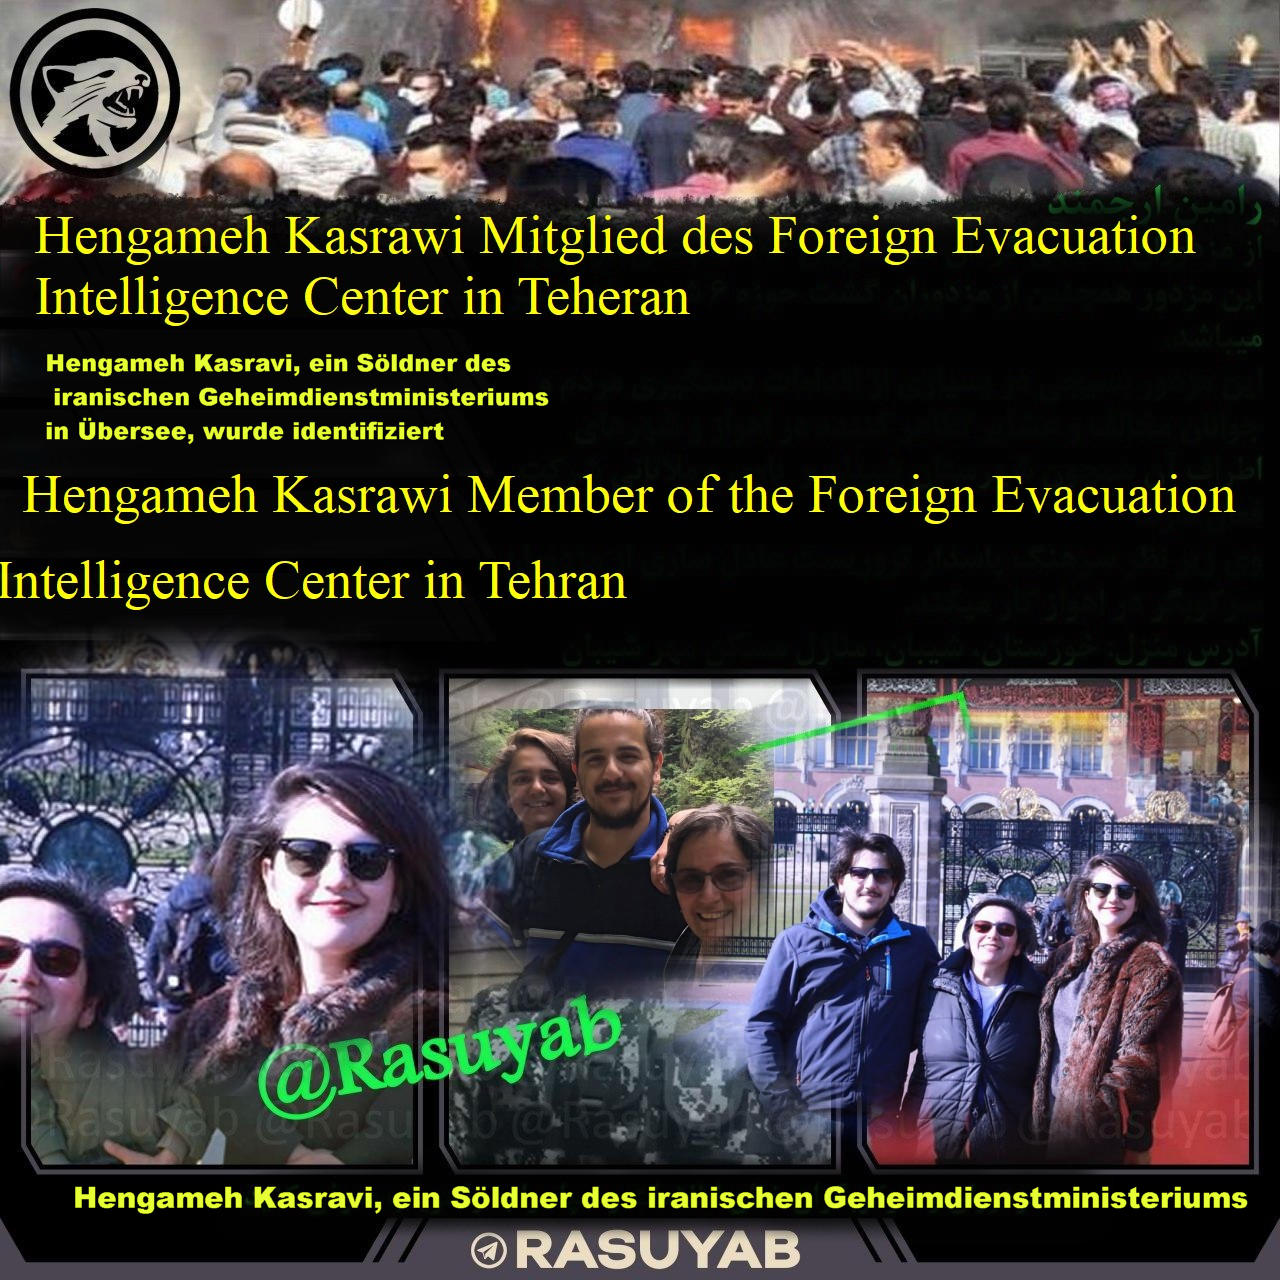 Hengameh Kasravi, ein Söldner des iranischen Geheimdienstministeriums in Übersee, wurde identifizie